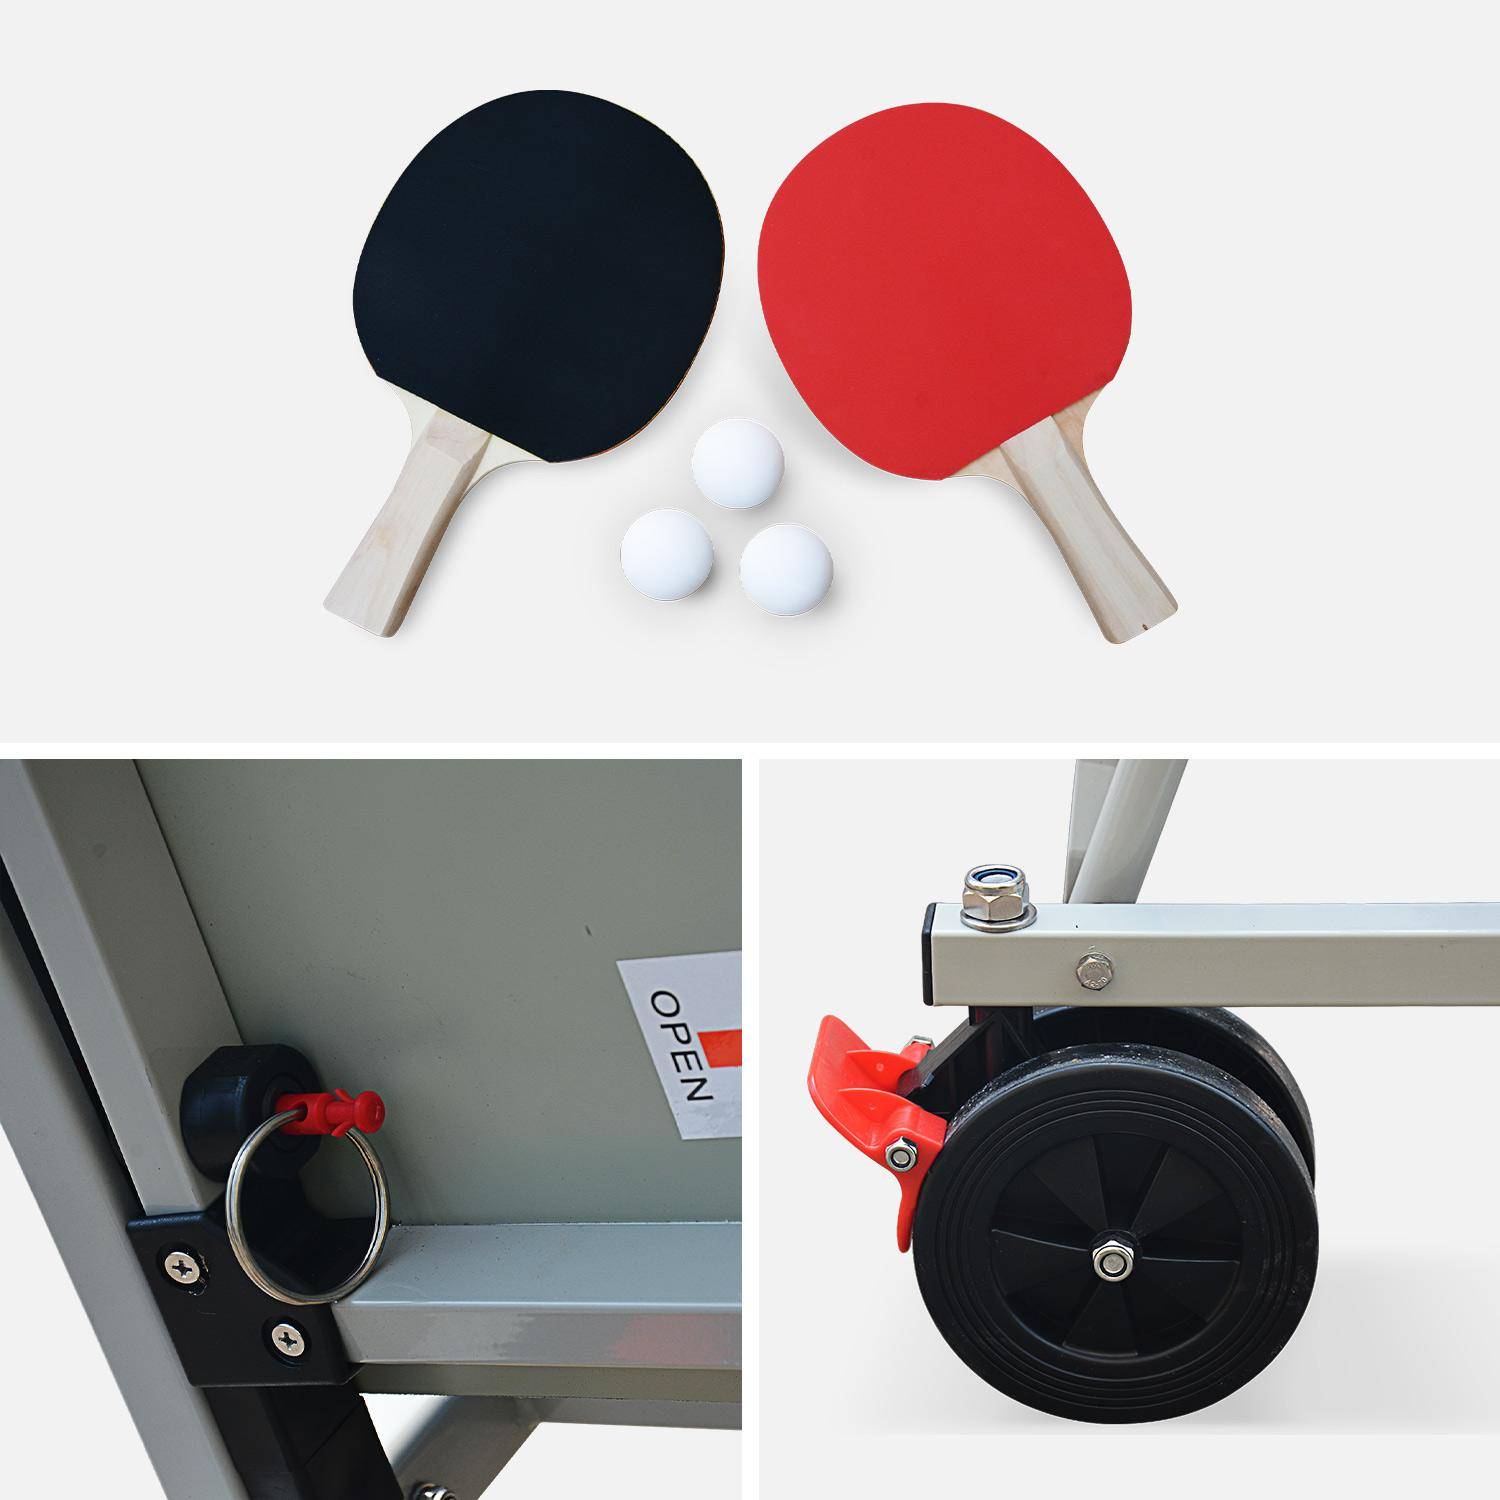 Table de ping pong OUTDOOR bleue - table pliable avec 2 raquettes et 3 balles, pour utilisation extérieure, sport tennis de table Photo5